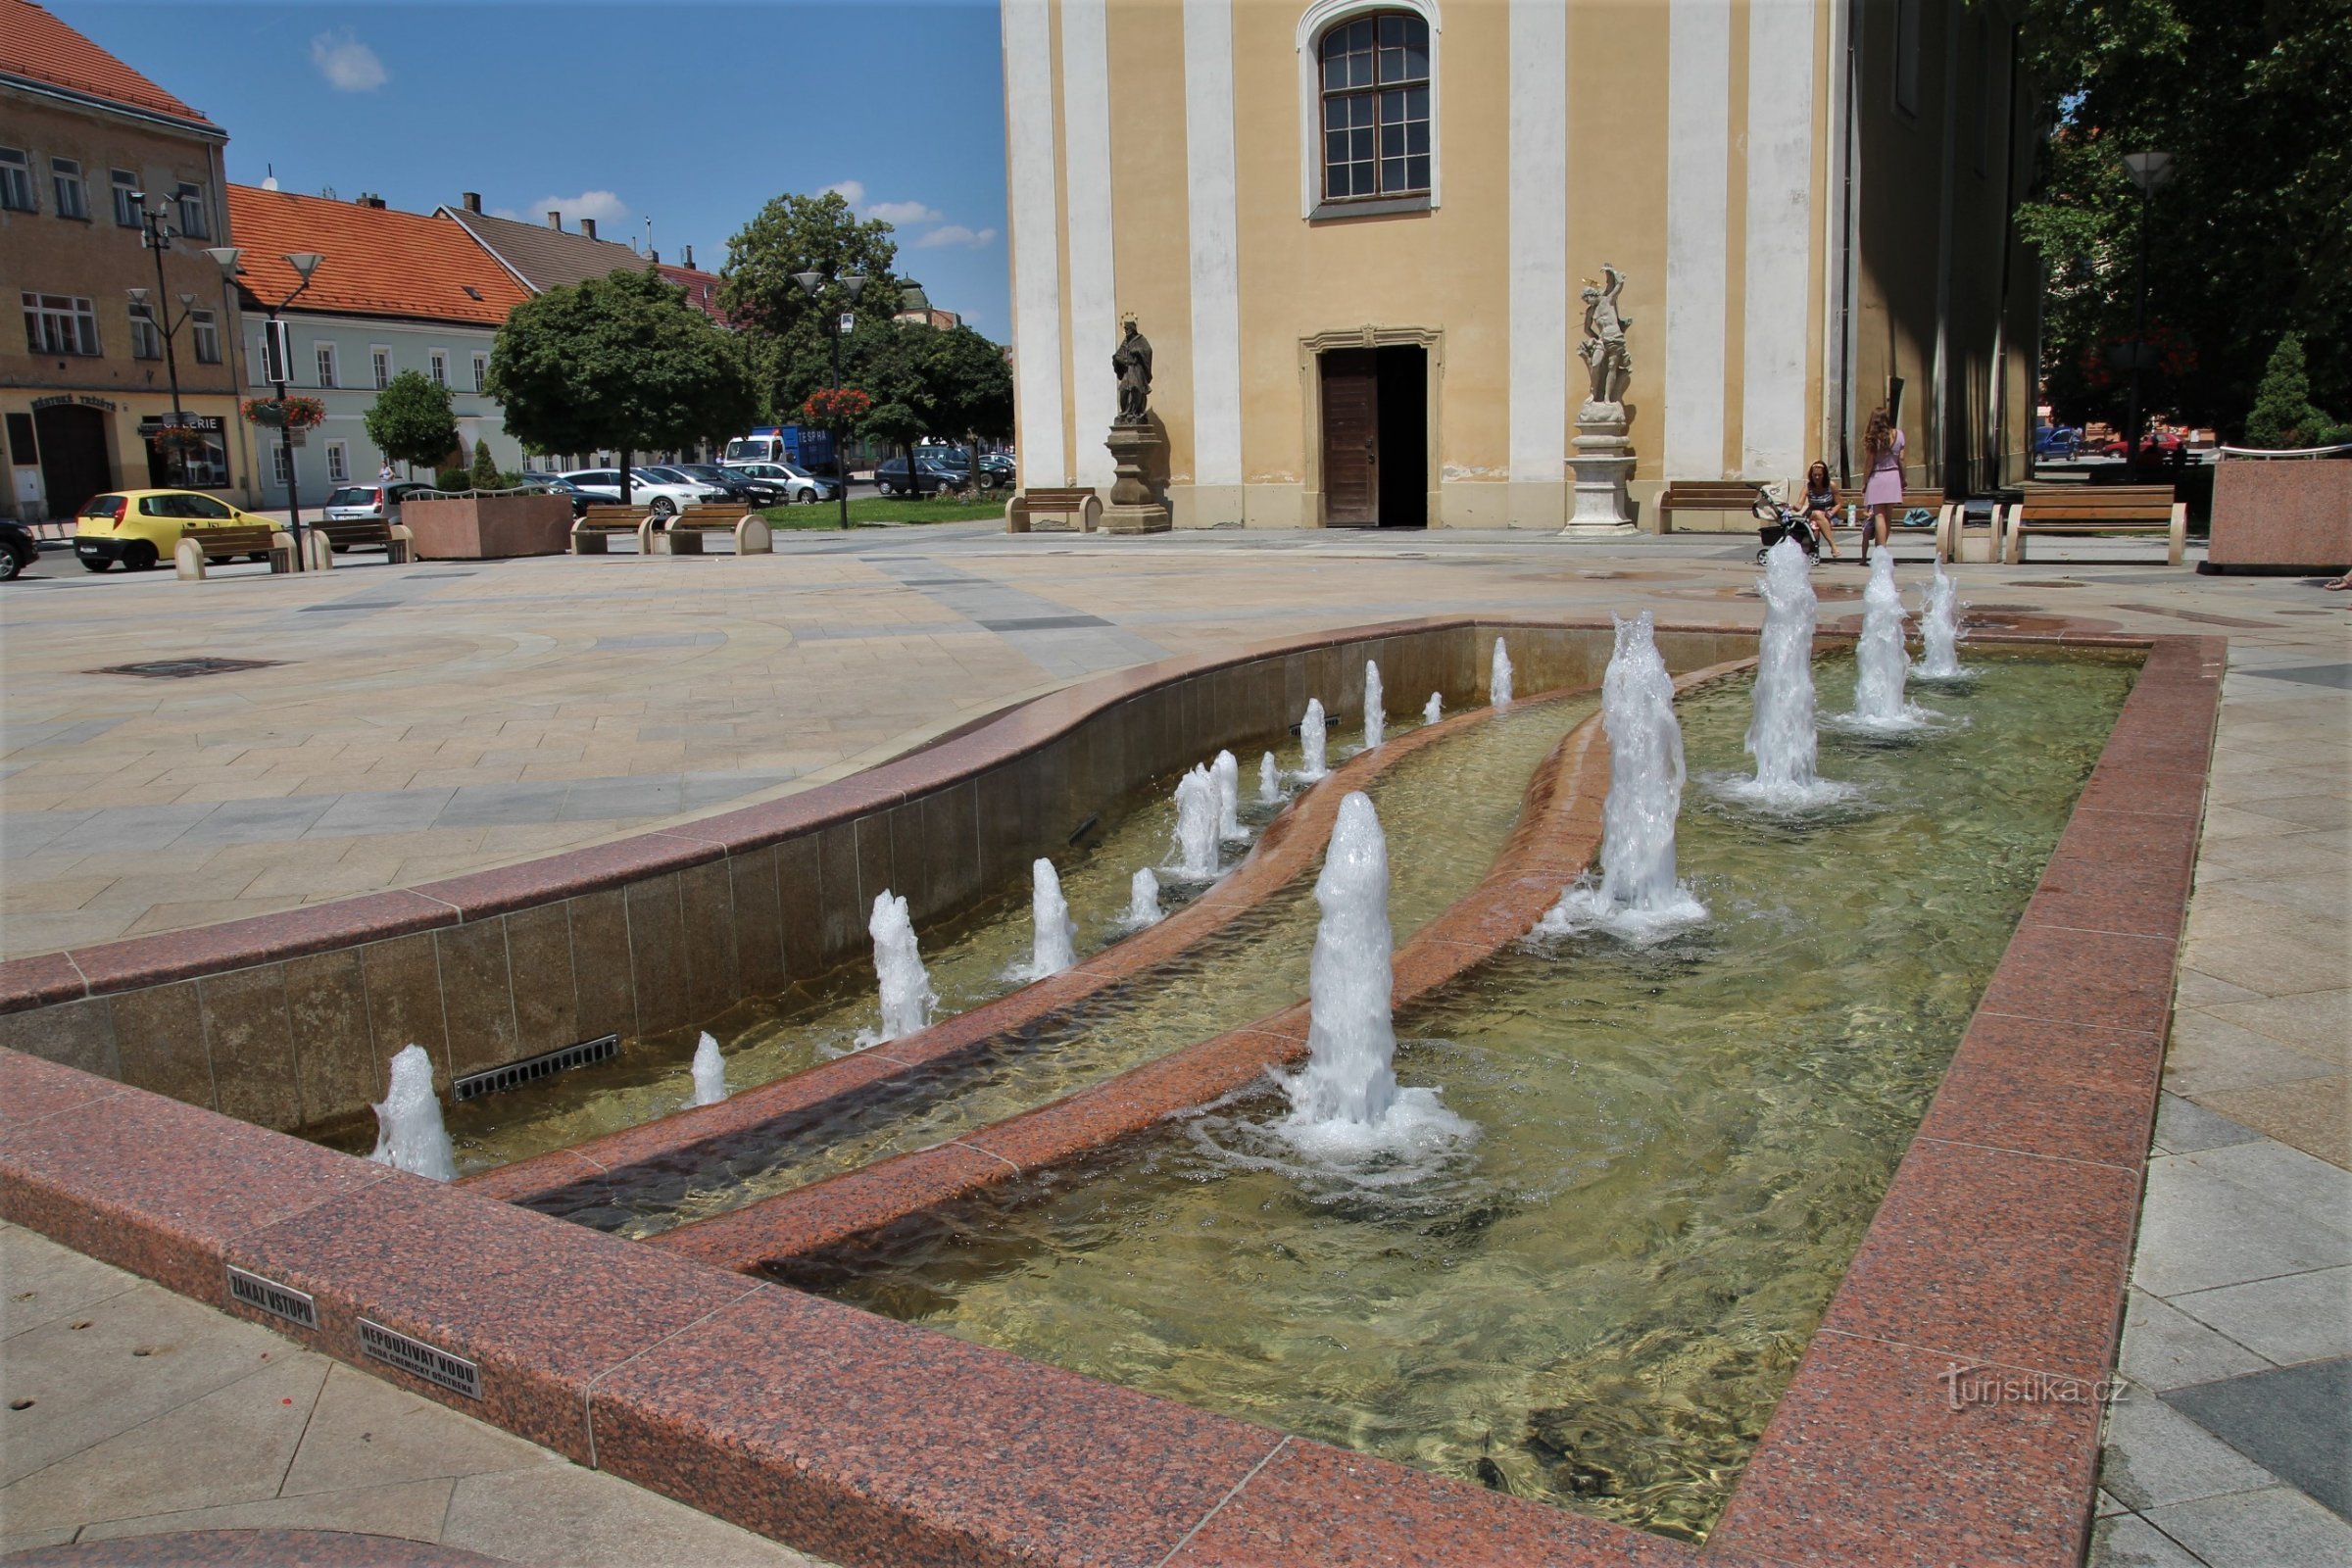 歌う噴水は聖マリア教会の近くにあります。 ローレンス